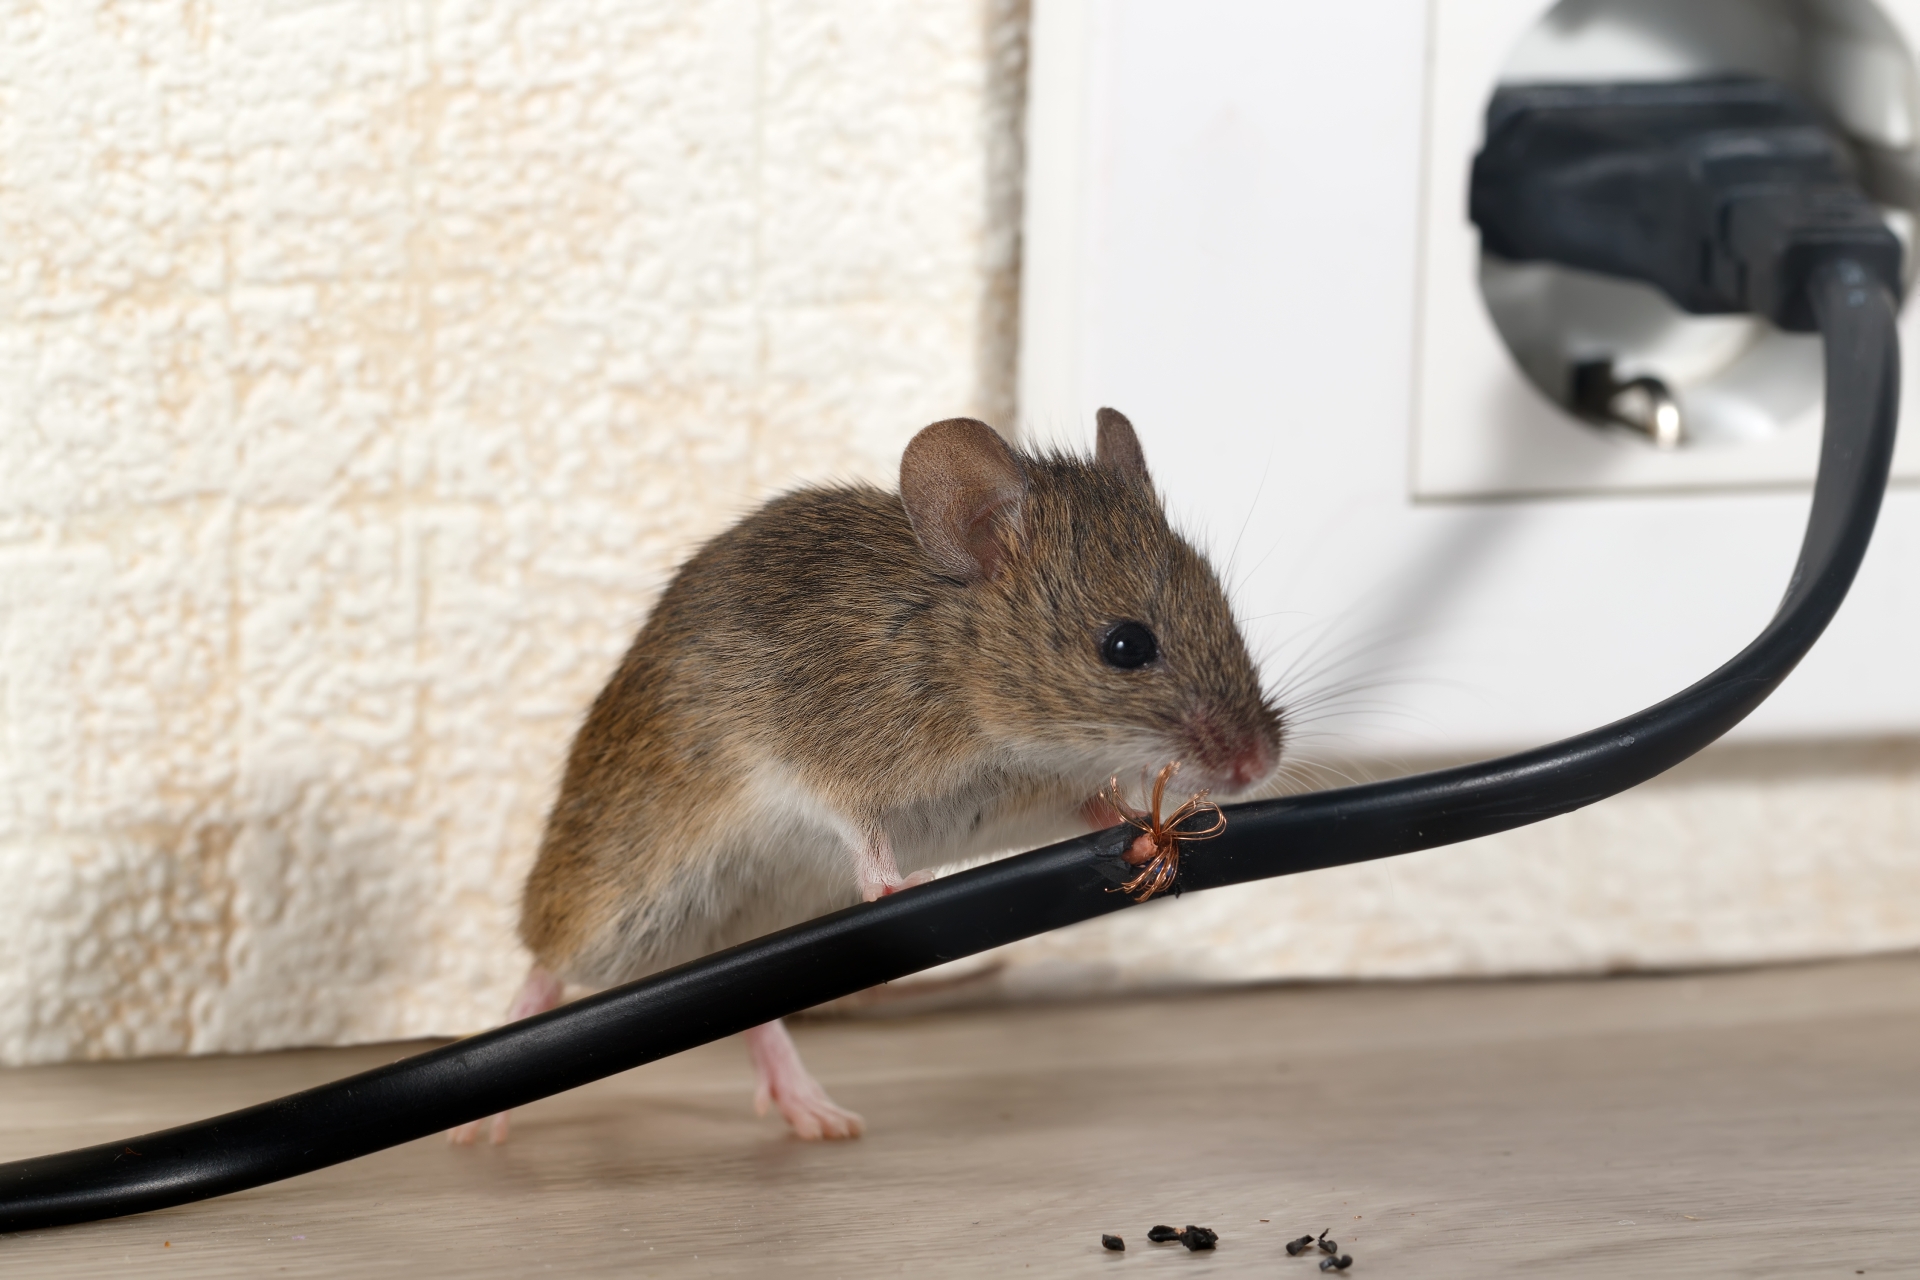 Mice Infestation, Pest Control in Wealdstone, Harrow Weald, HA3. Call Now 020 8166 9746